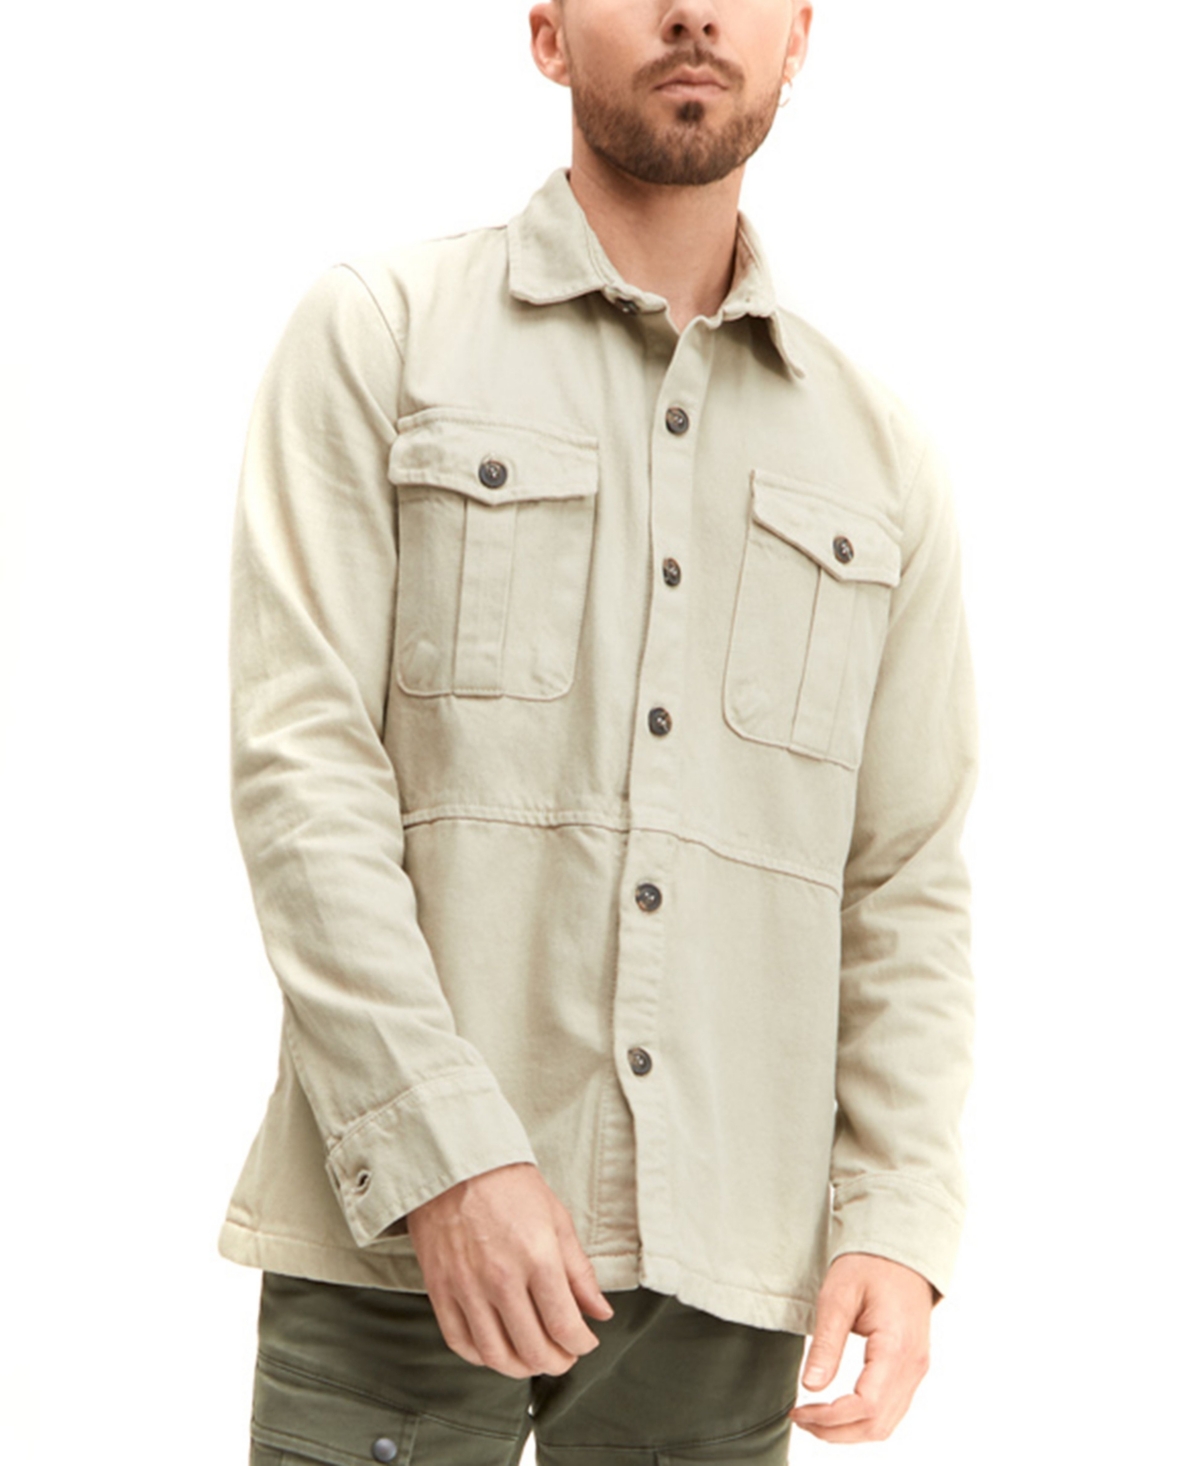 Men's Modern Relaxed Casual Button-Down Shirt - Beige